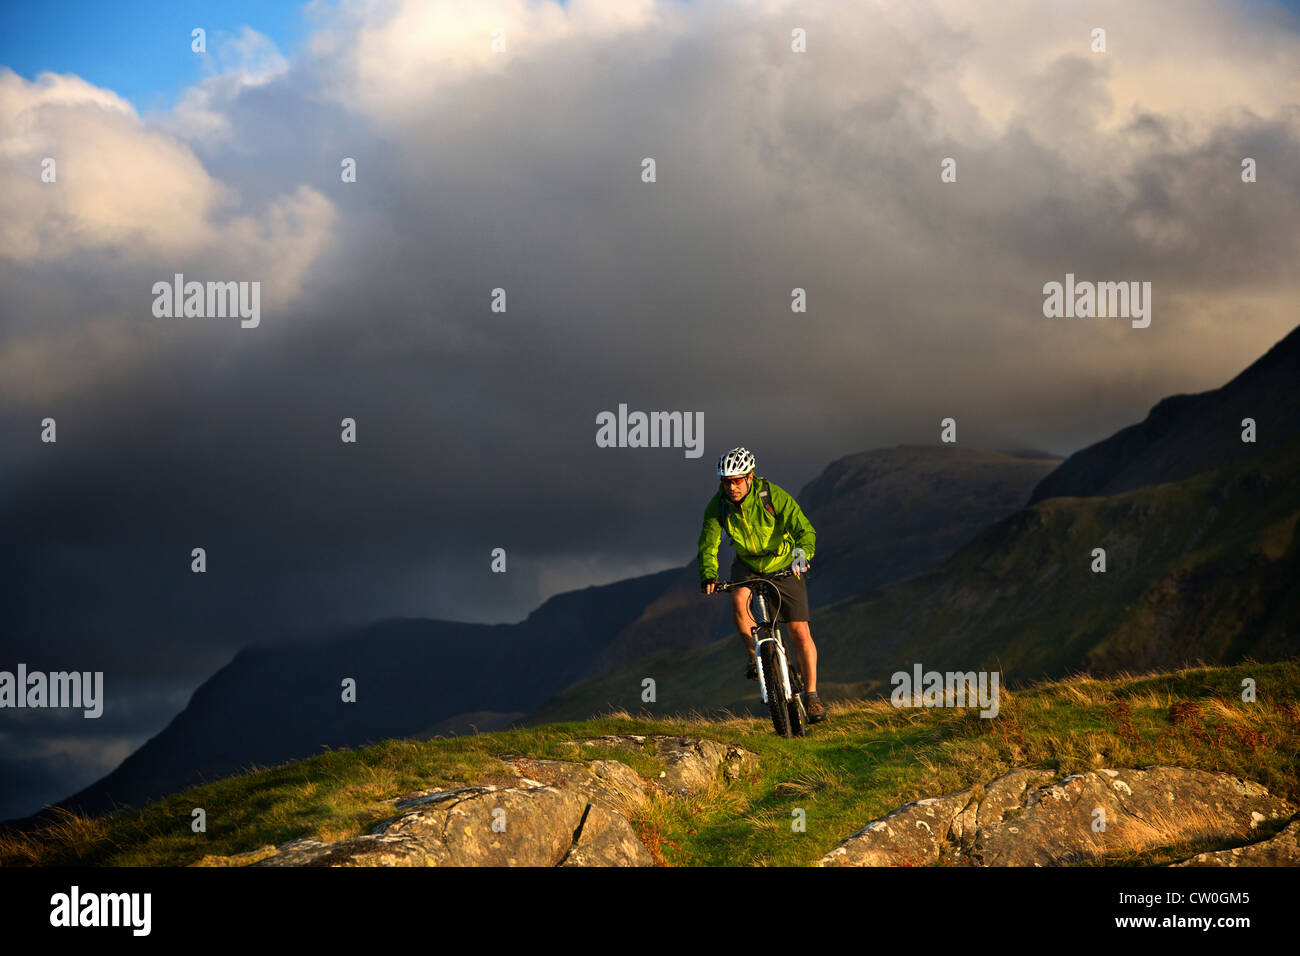 Mountain biker on grassy hillside Stock Photo